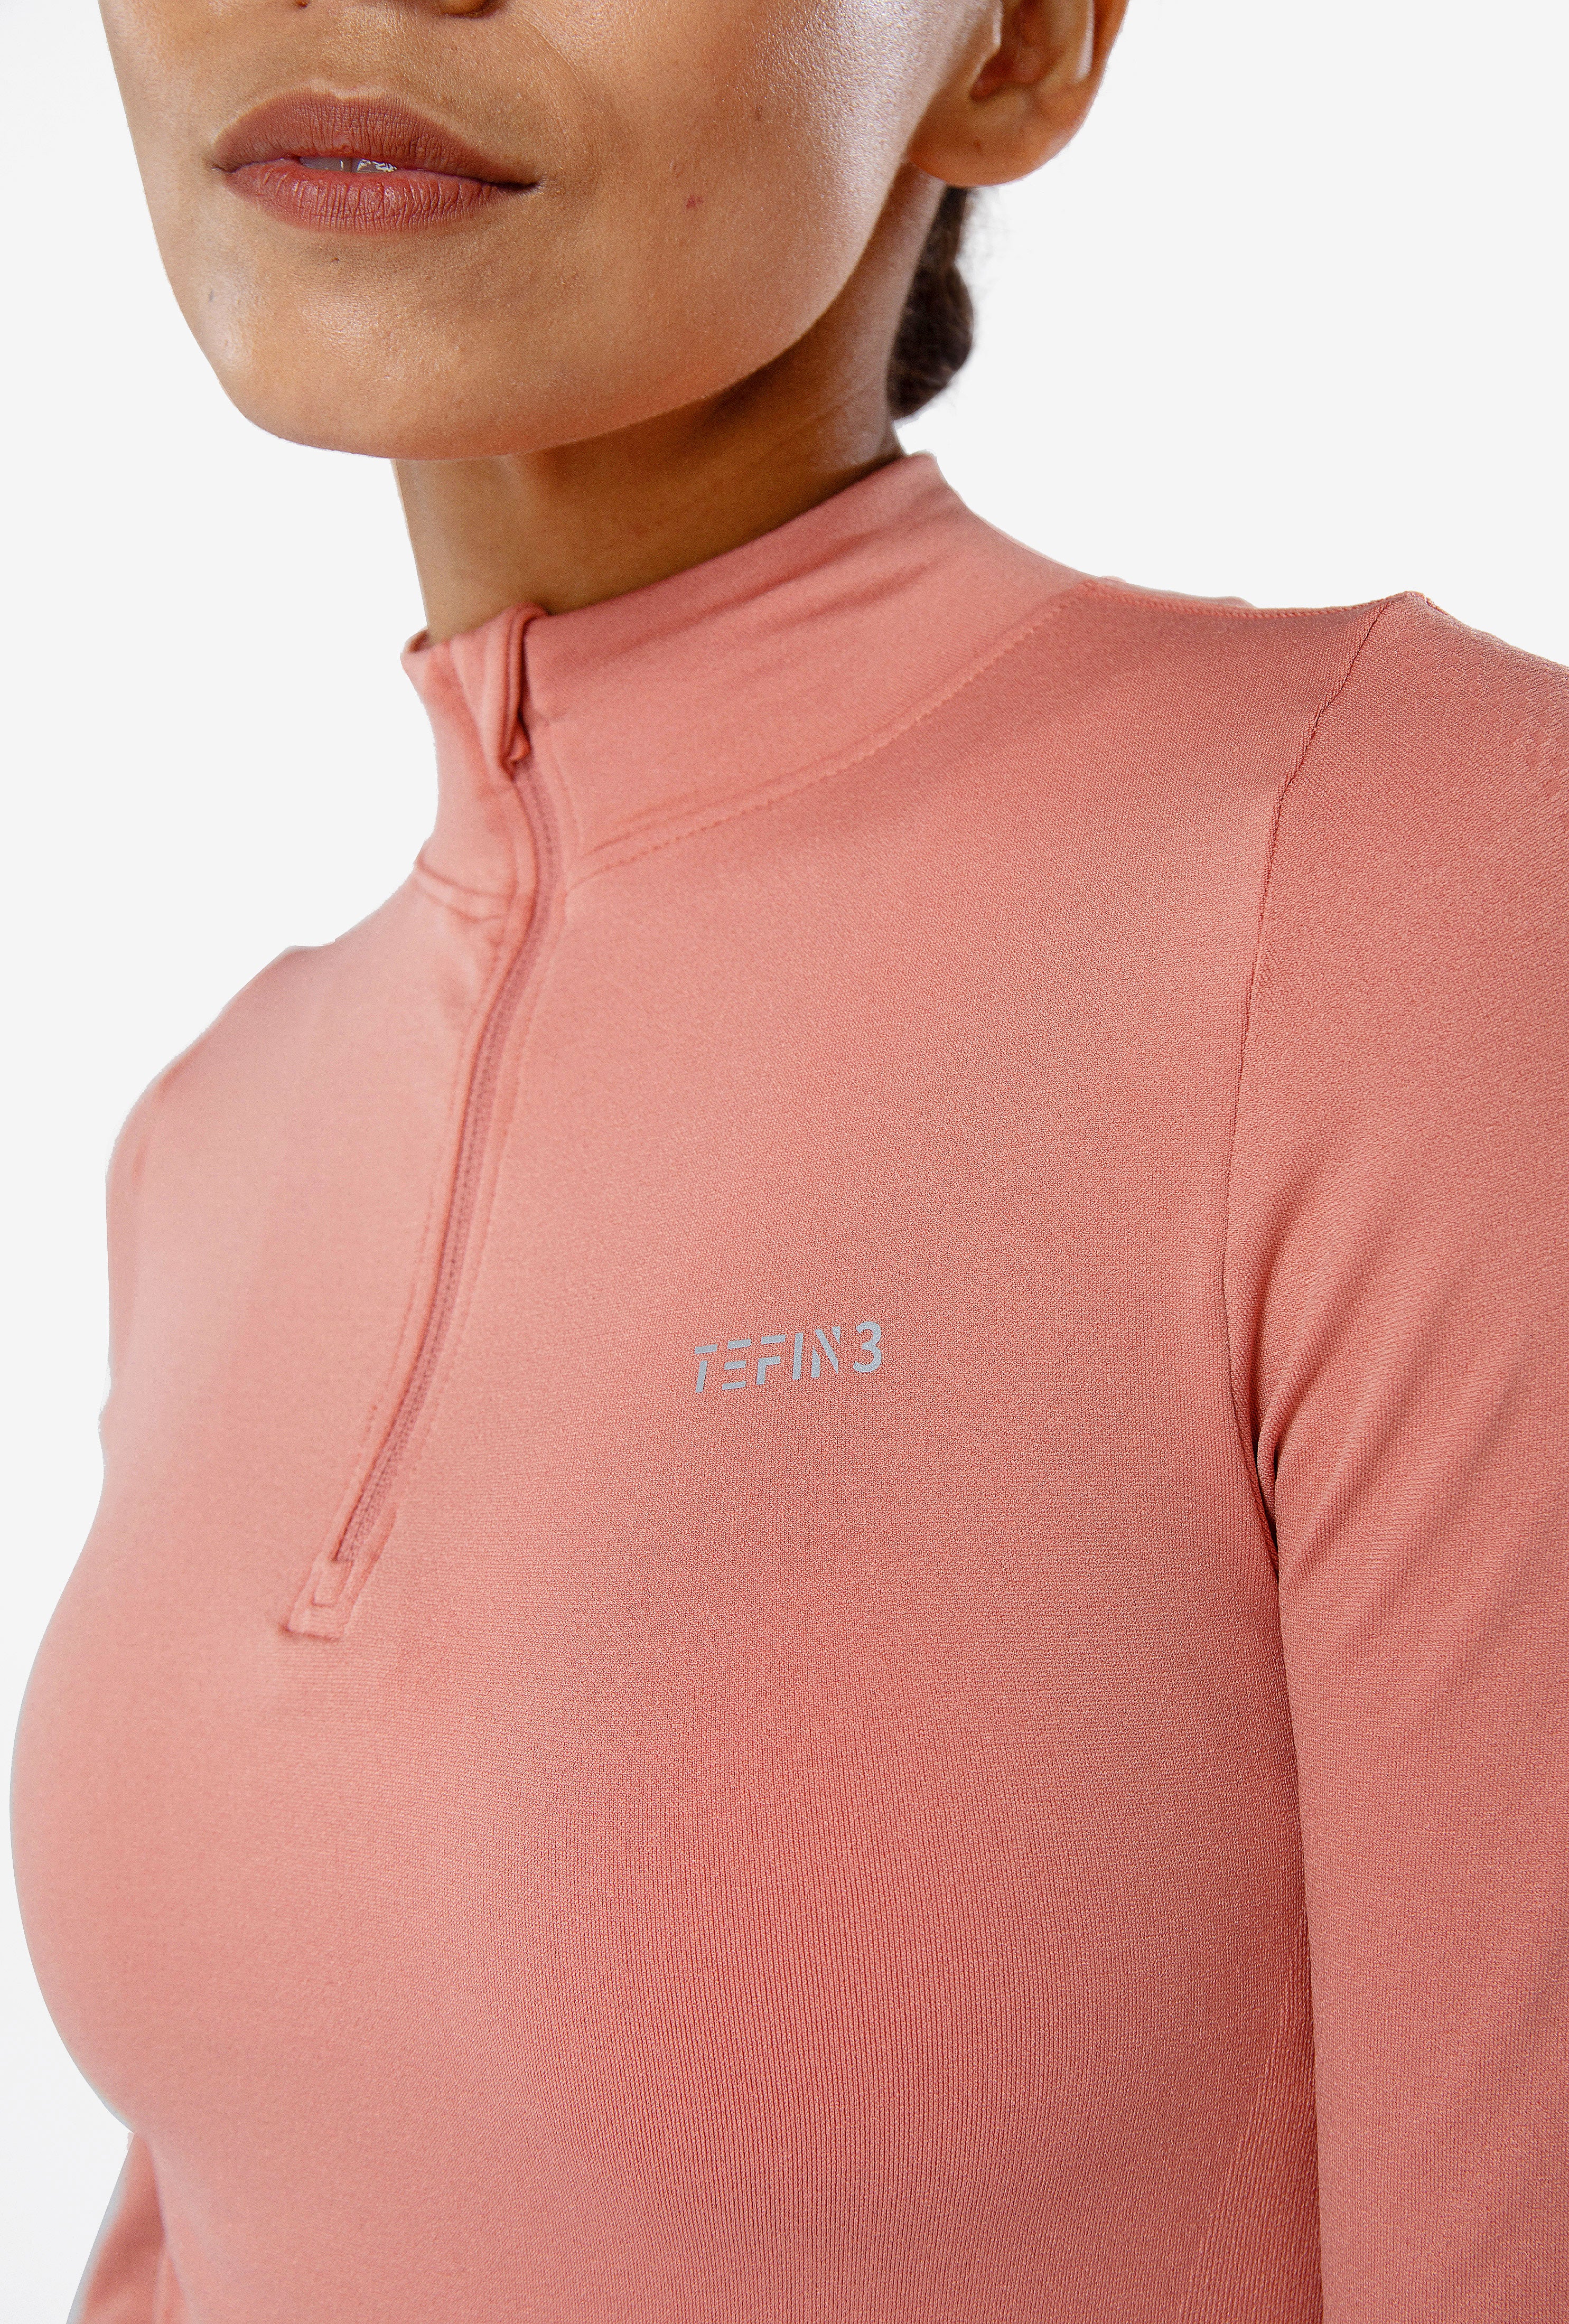 TEFIN3 Comfy Seamless Long Sleeve Zip Crop Top Rose Brown (3)